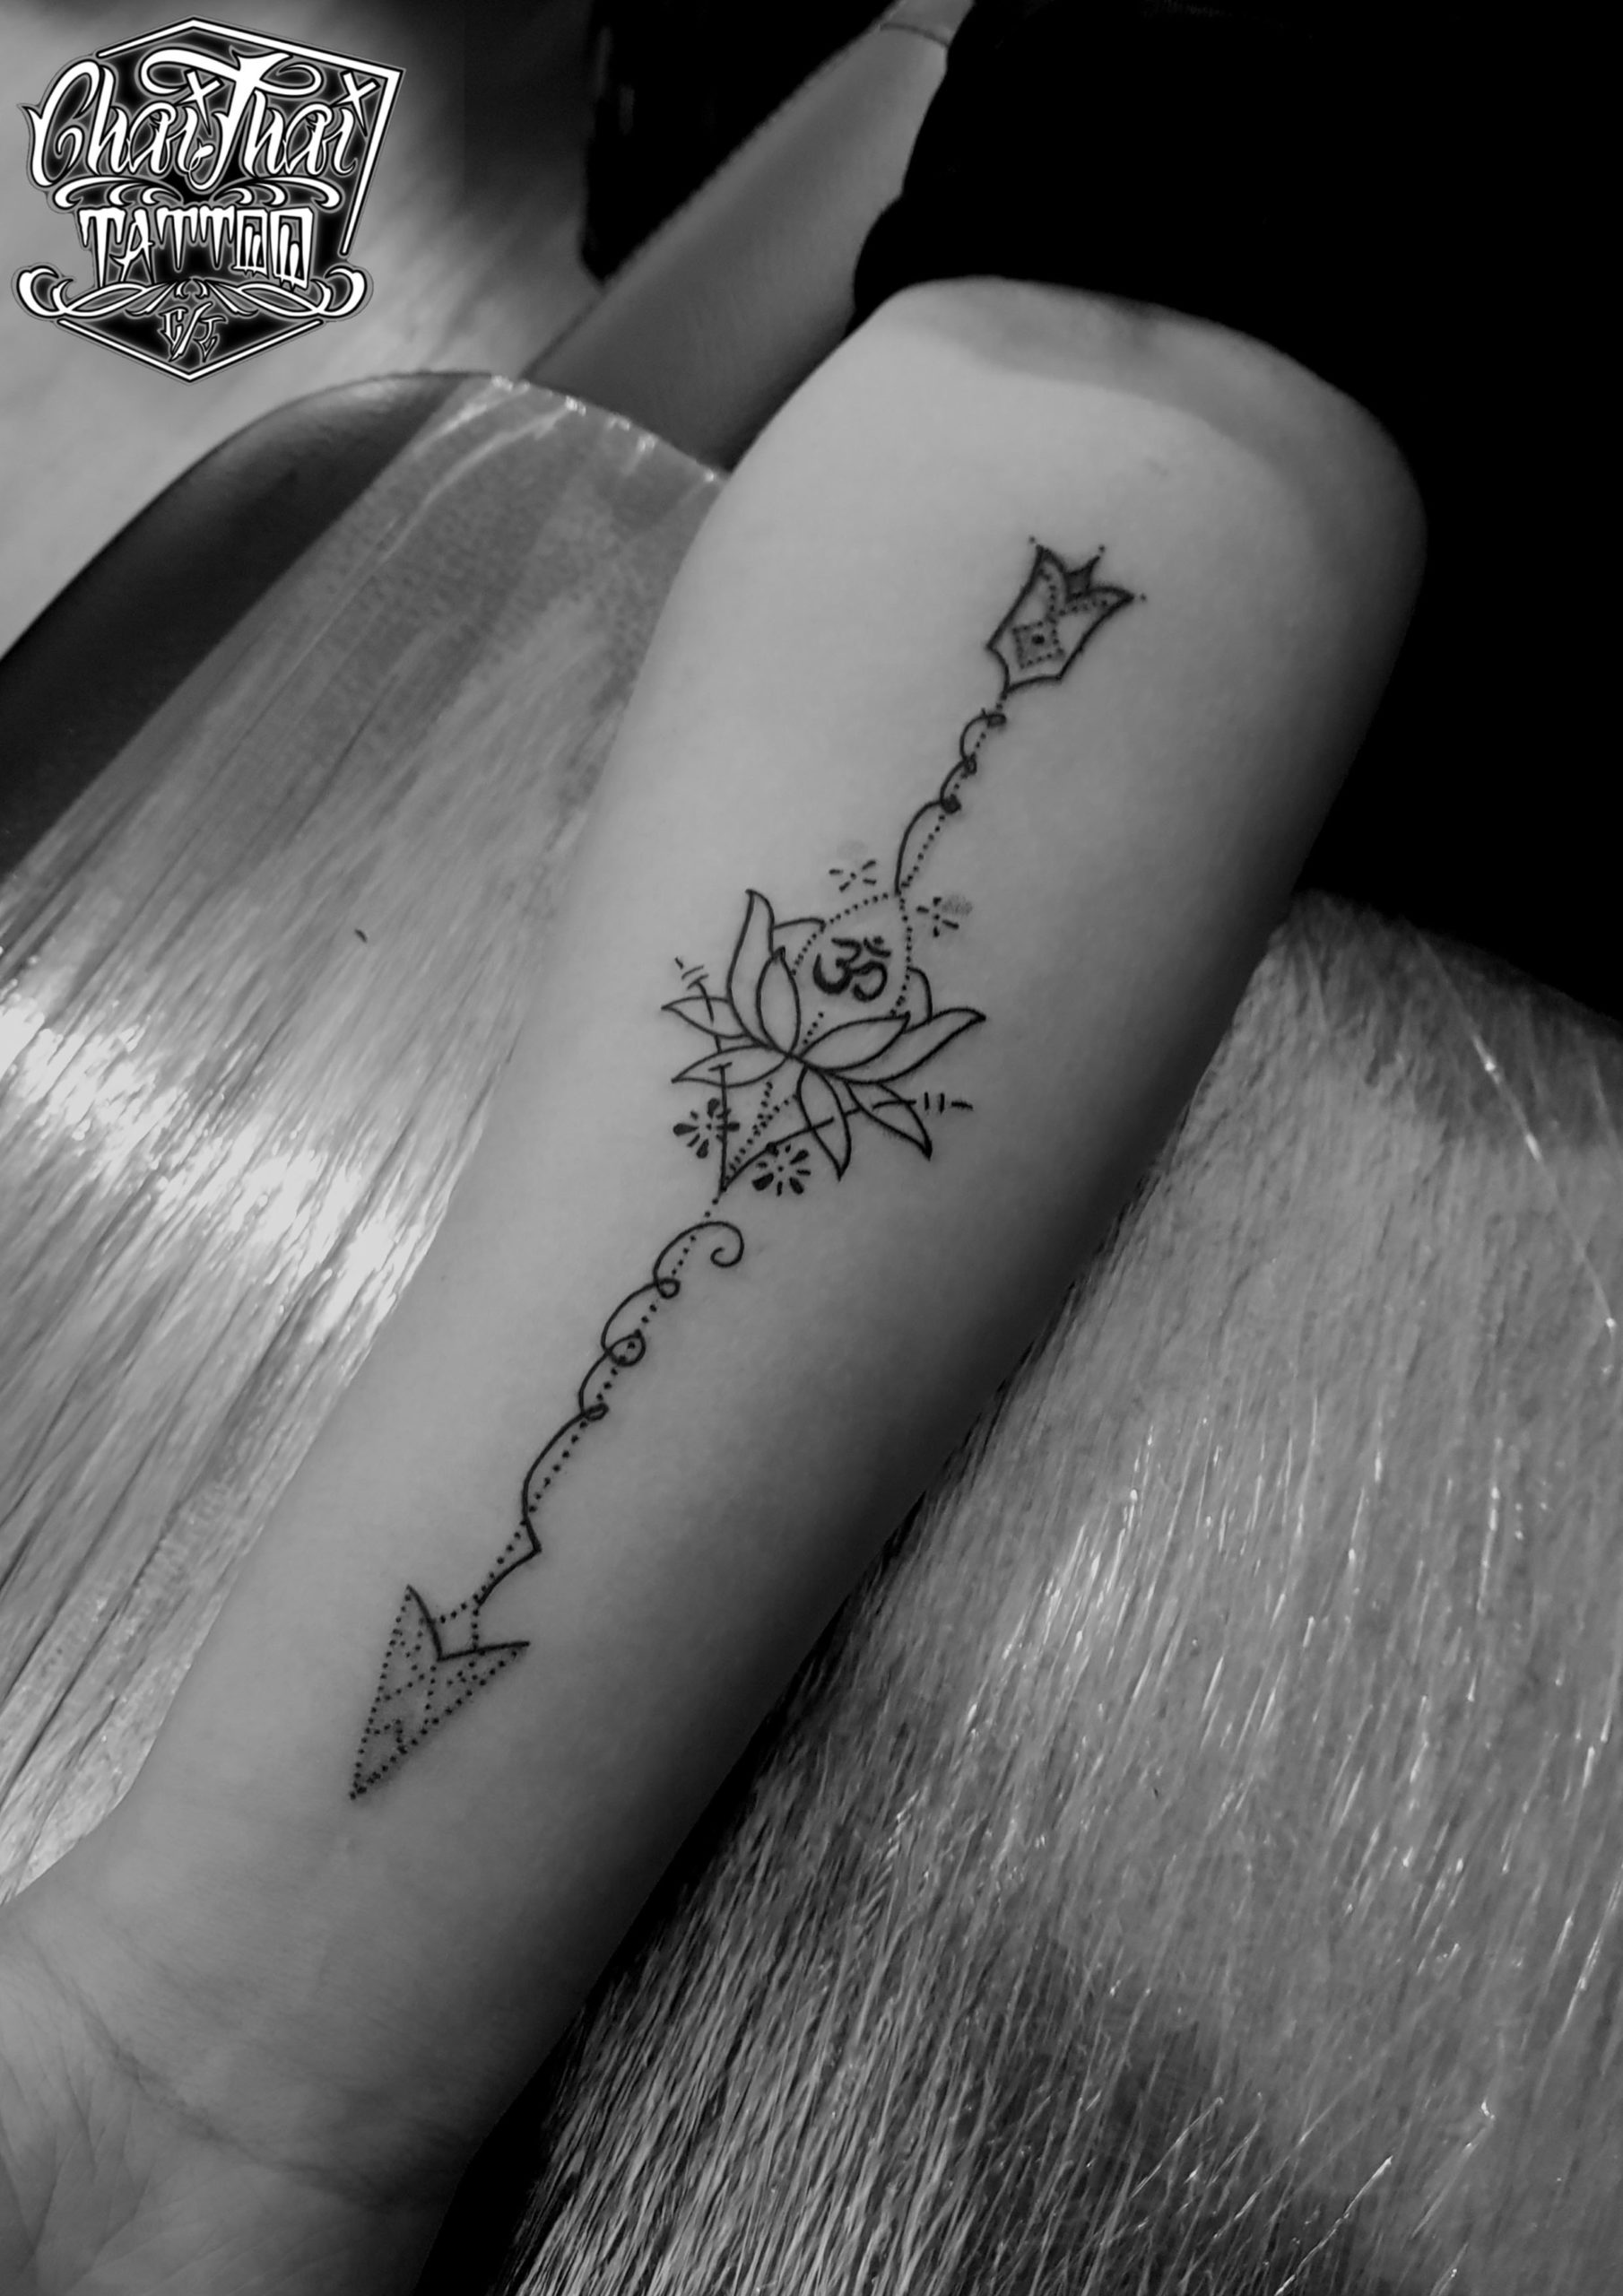 Cover up #tattoo #tattoos #tattooed #art #tattooed #chinesetattoo #tattoos  #tat #ink #inked #tattooed #tattoist #art #design #bodyart #... | Instagram